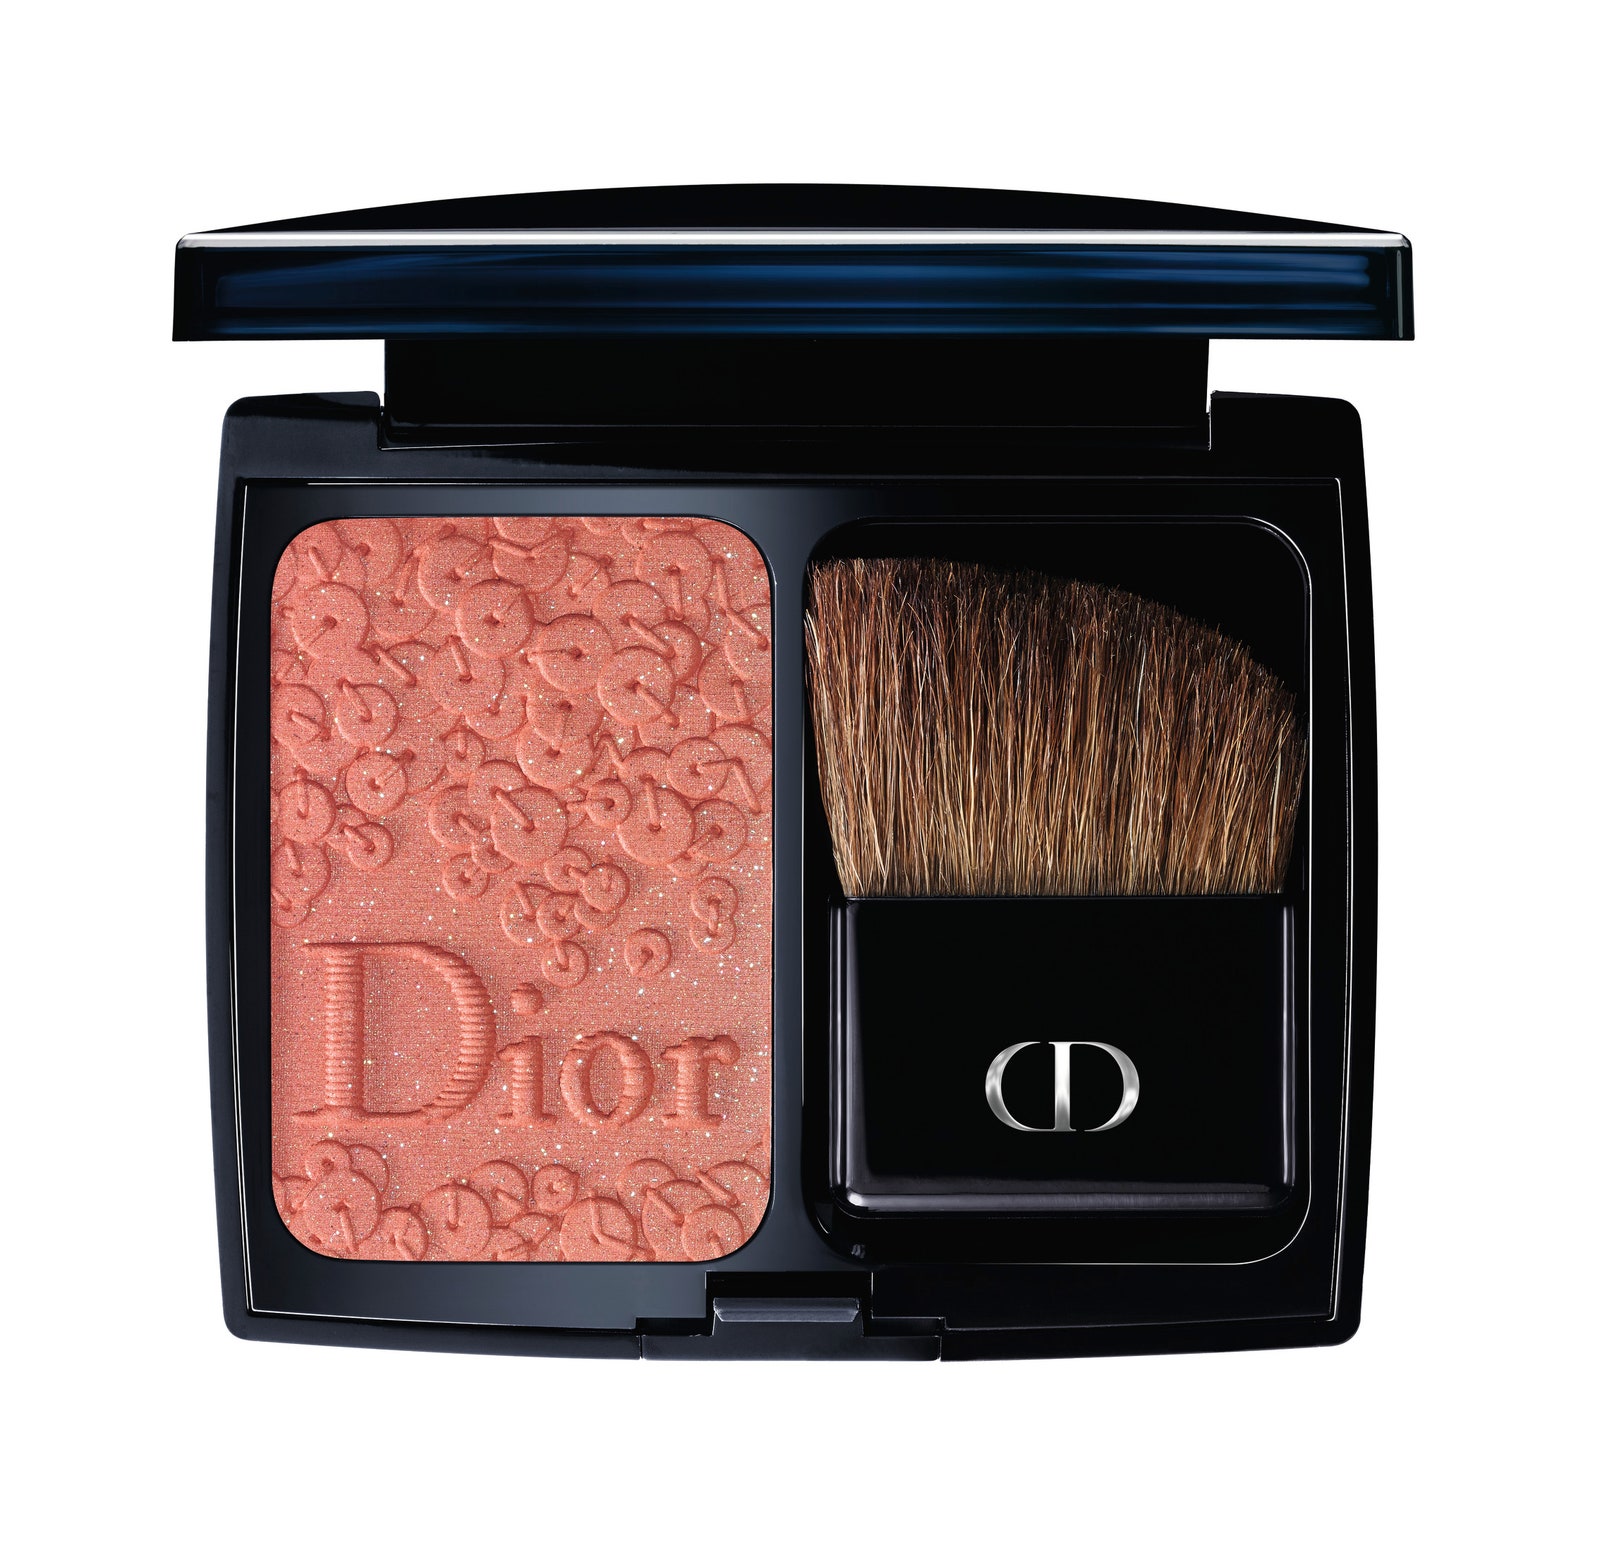 Dior Splendor рождественская коллекция макияжа уже в продаже | Allure